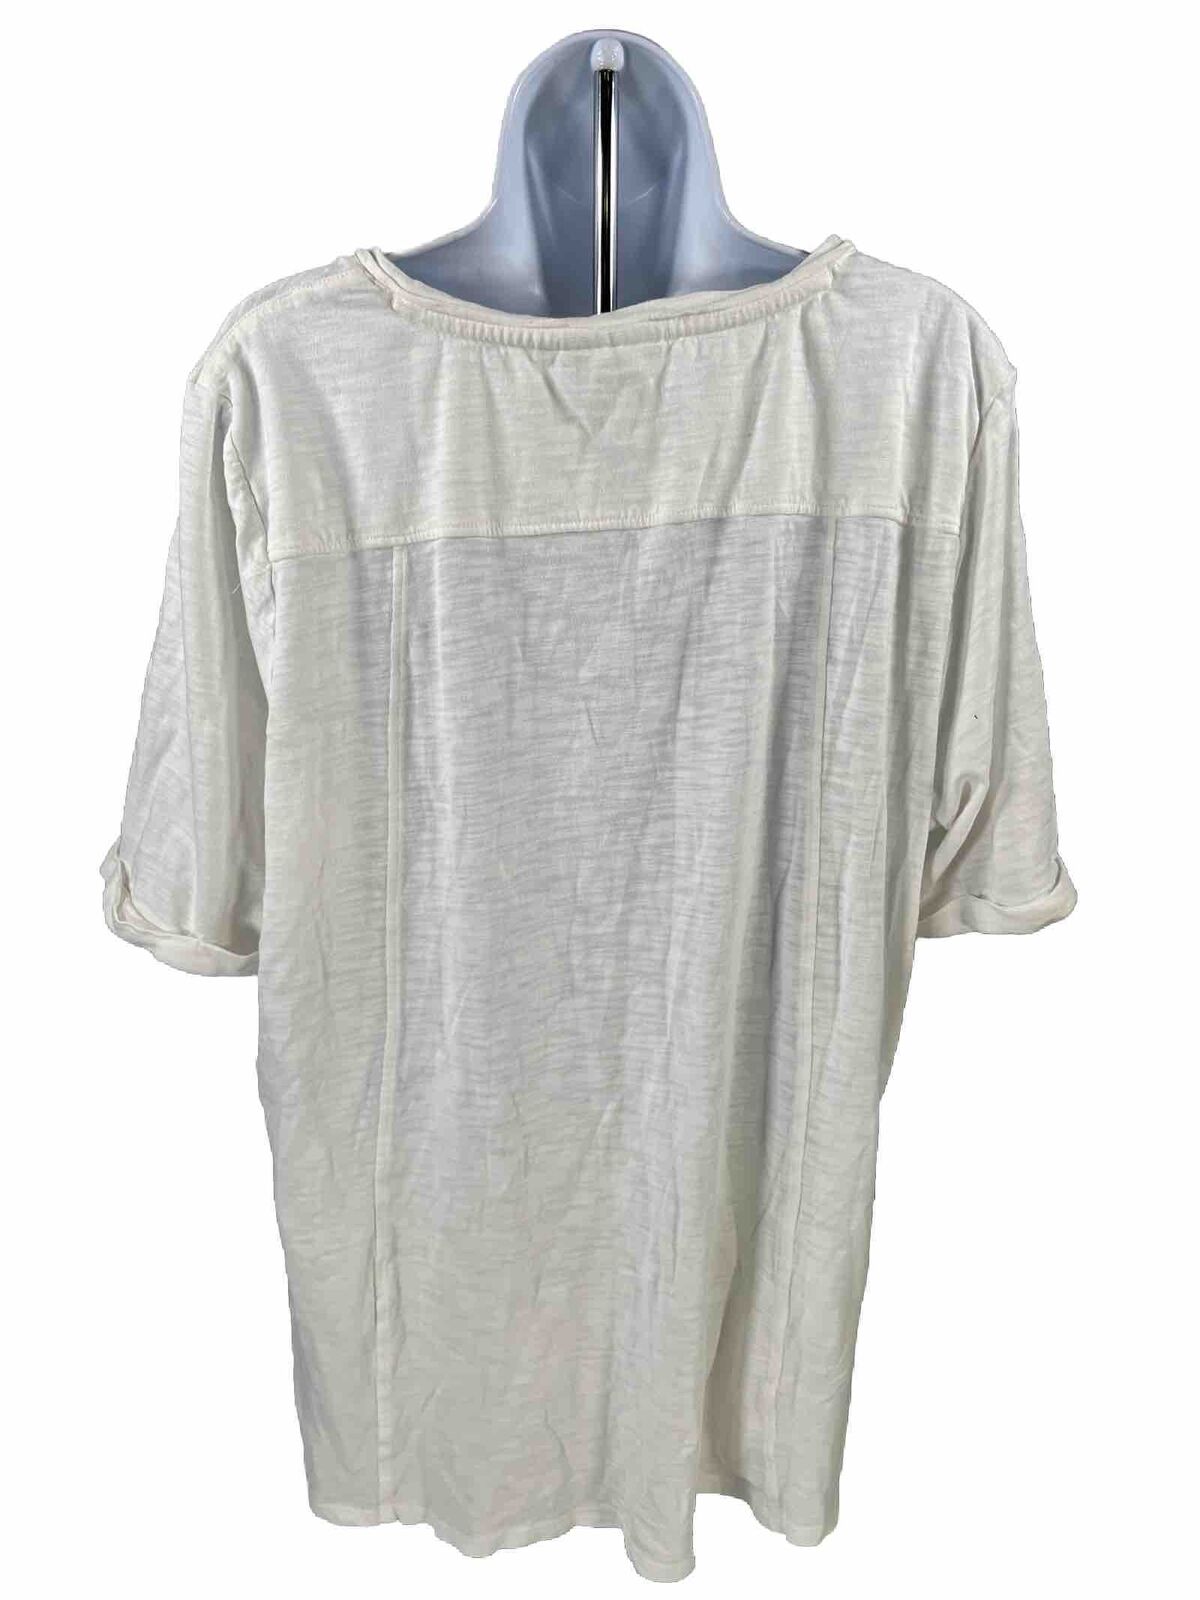 Chico's Women's White Tropical Print V-Neck T-Shirt - 3/US XL